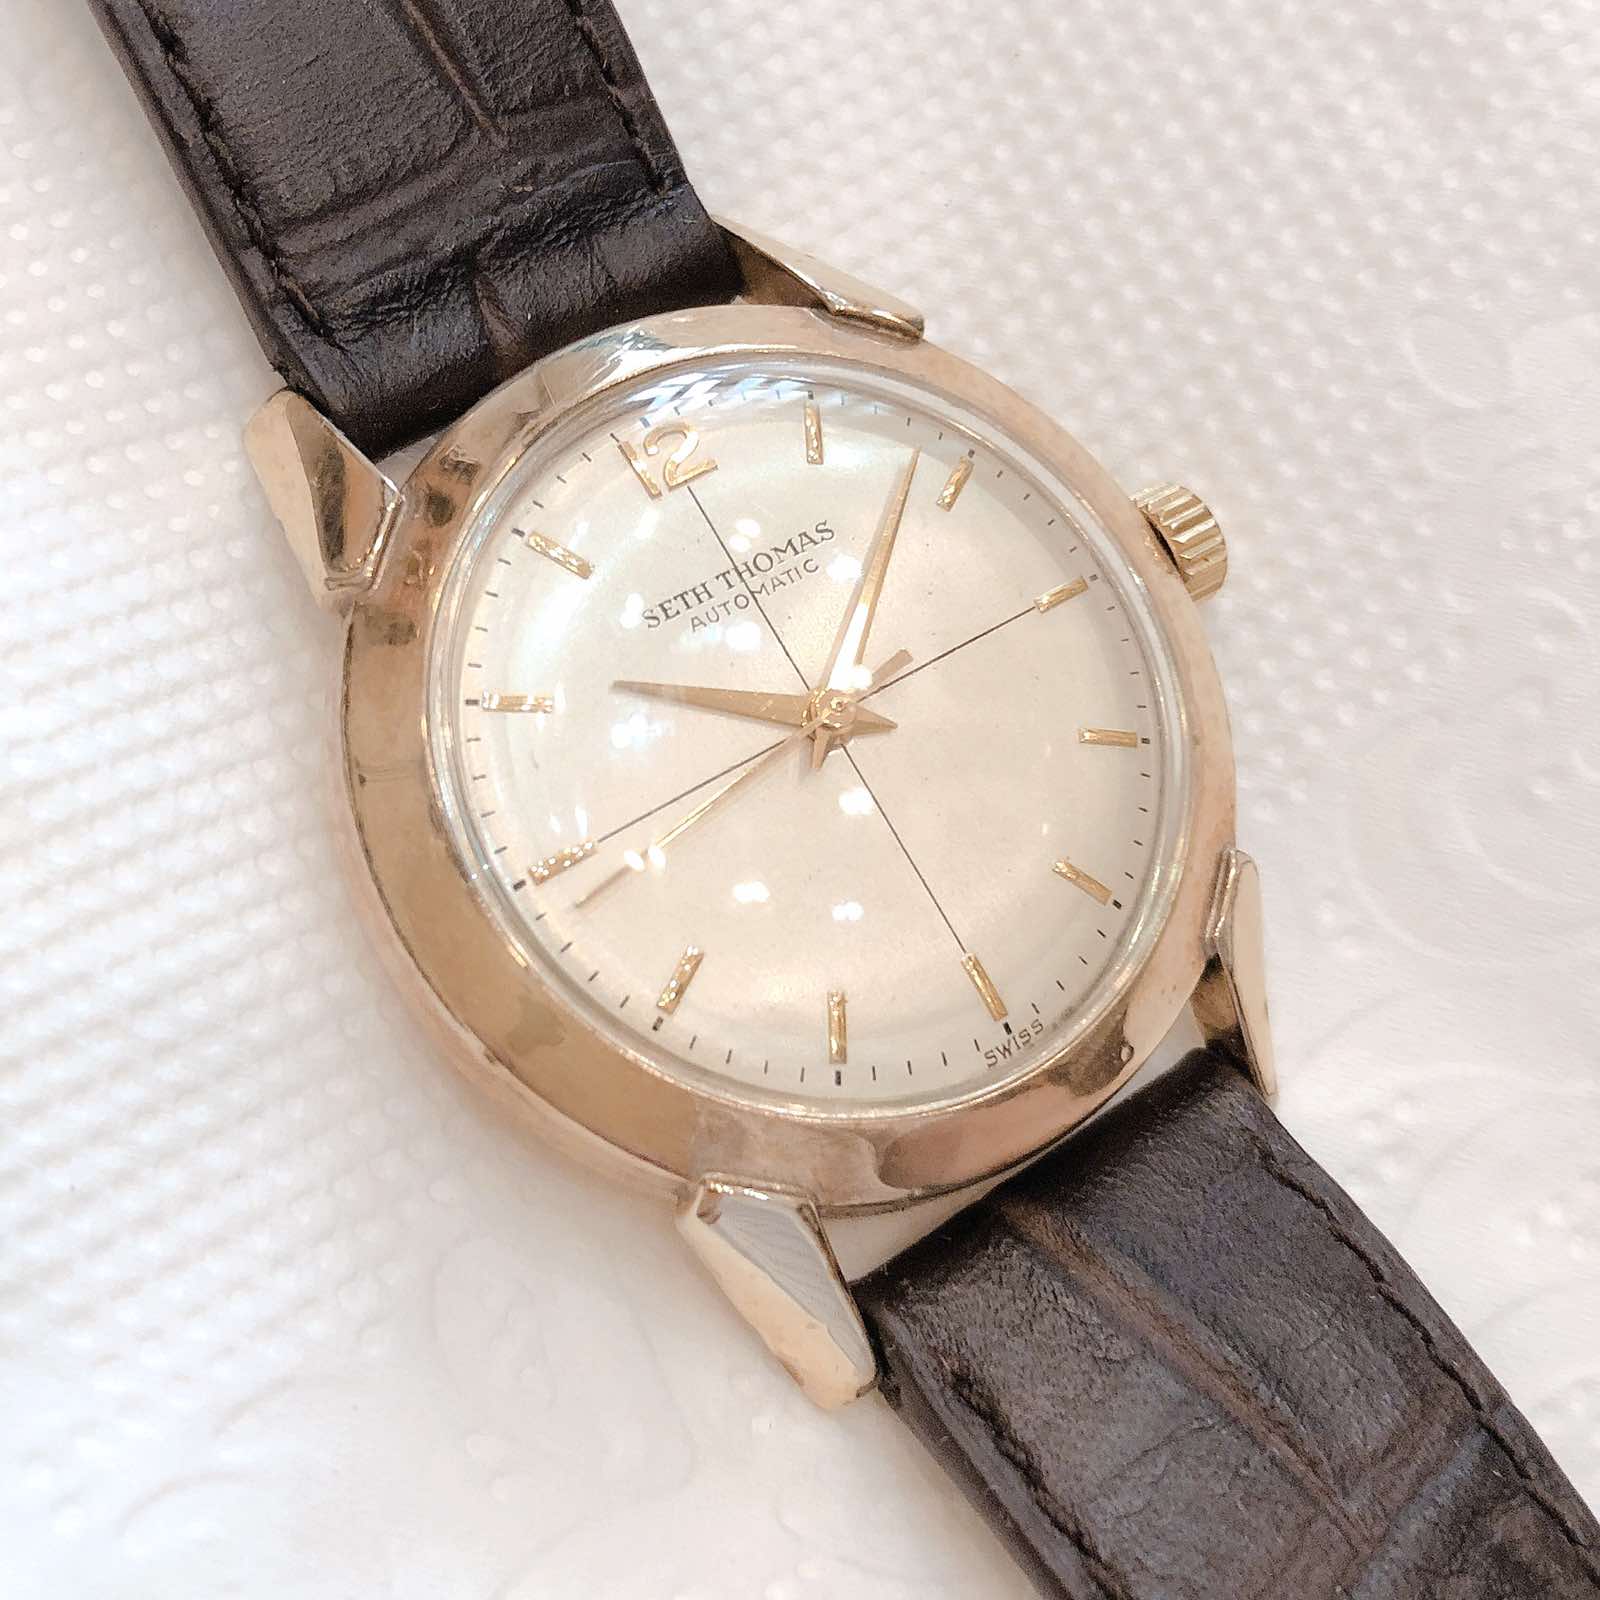 Đồng hồ cổ SETH THOMAS Automatic bọc vàng 10k Gold Filled chính hãng Thụy Sỹ